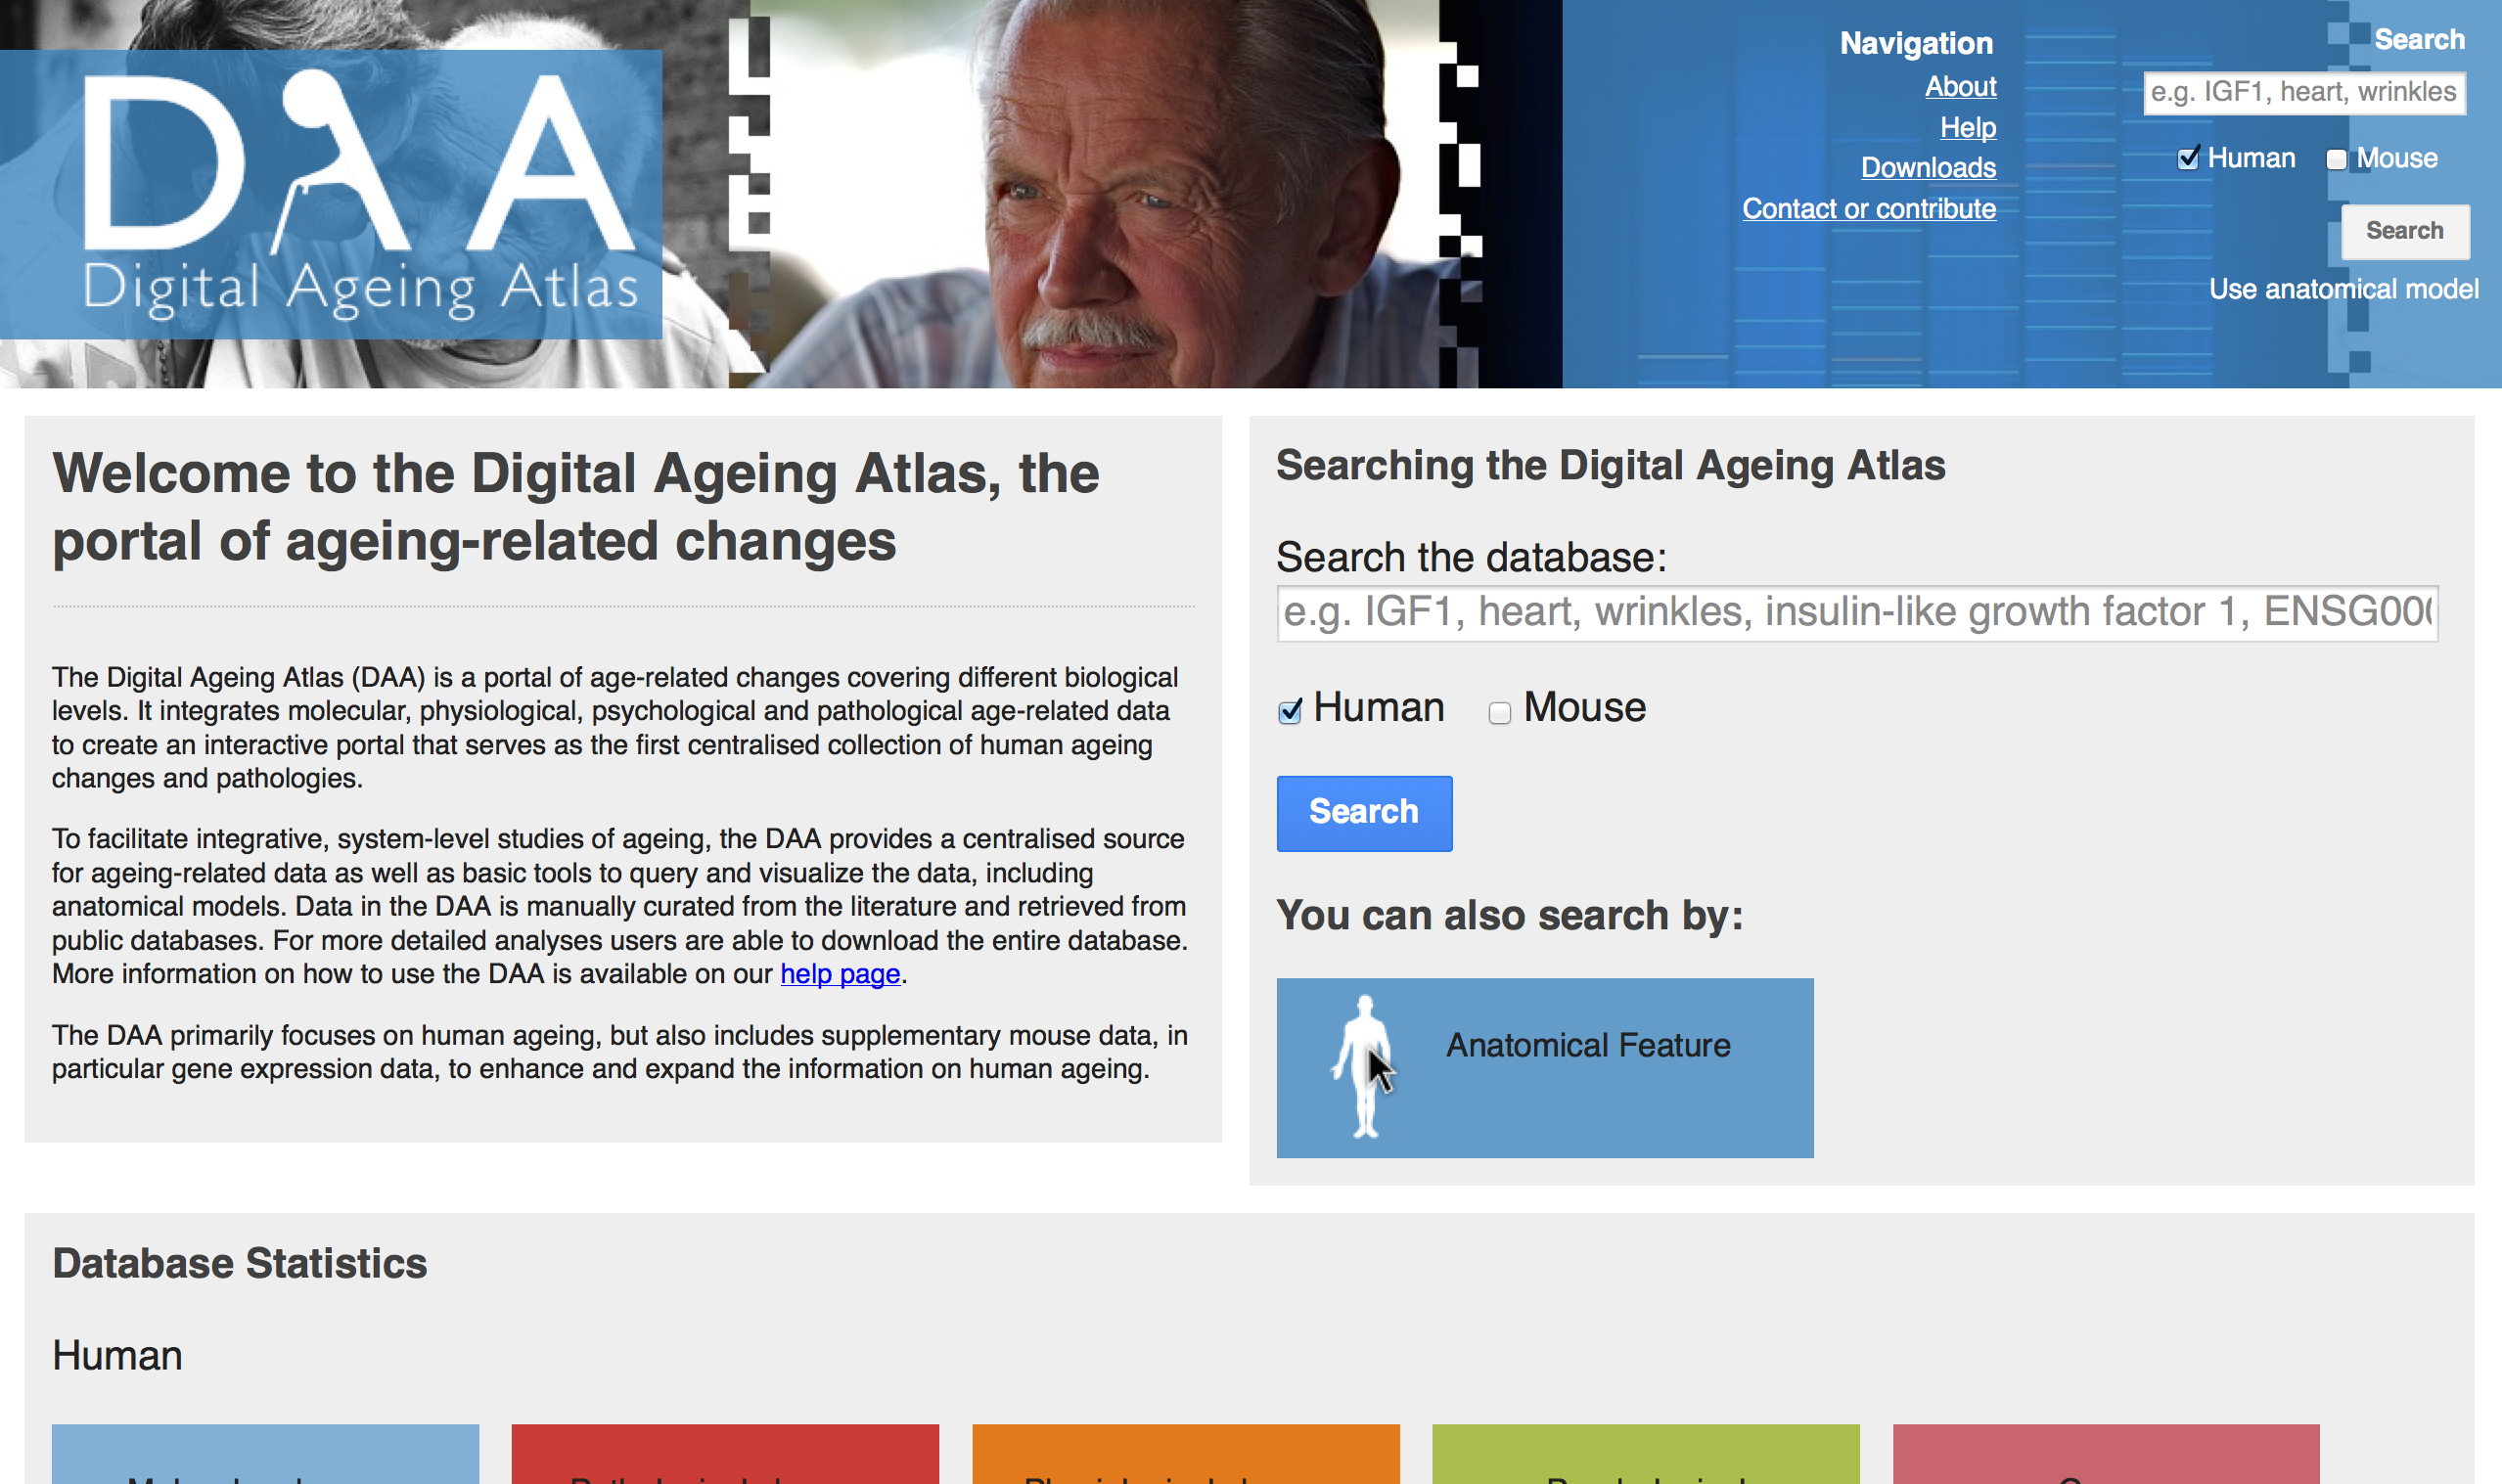 The Digital Ageing Atlas homepage